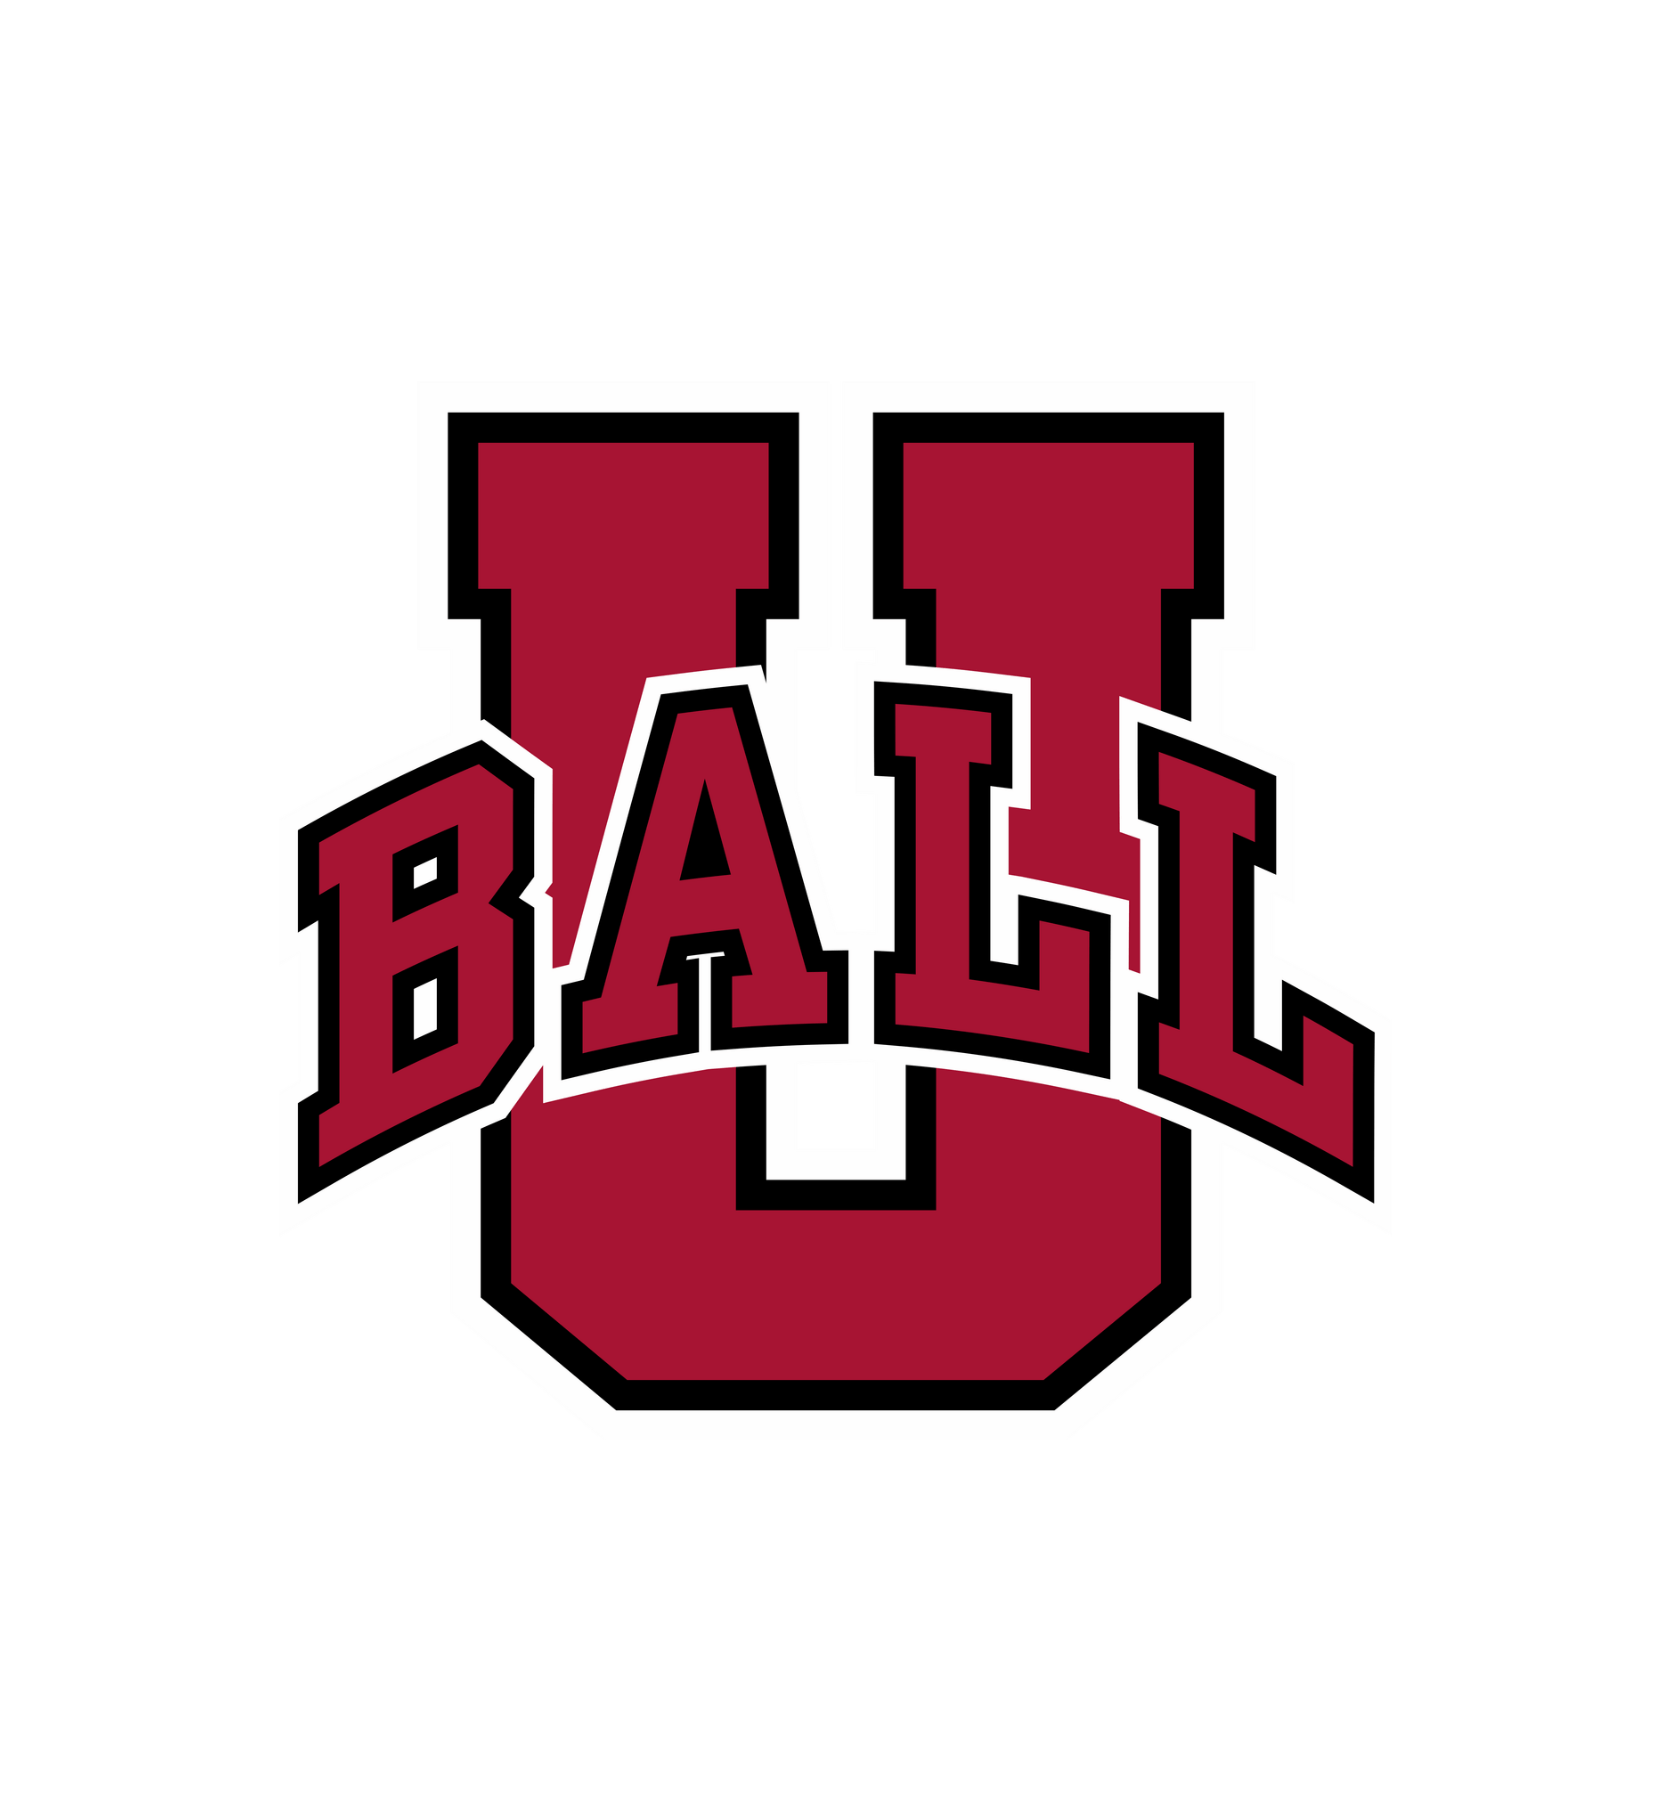 Ball U Logo - Ball U Logo - 2019 Logo Ideas & Designs